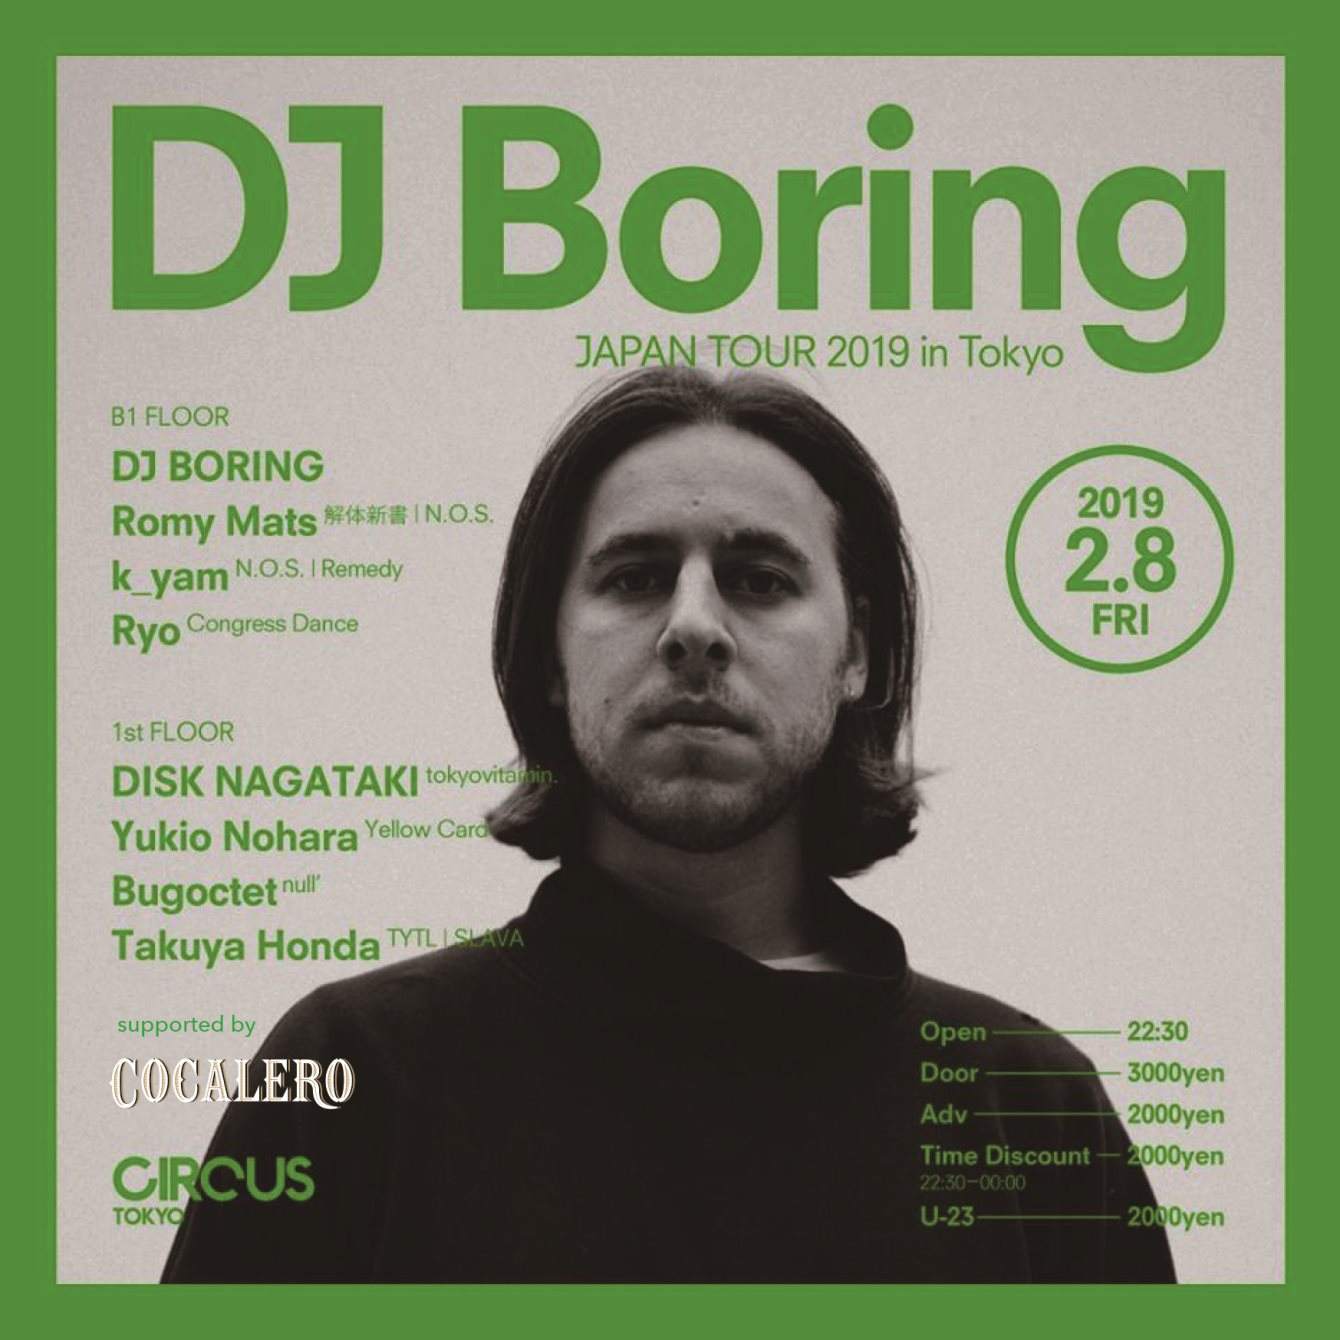 DJ Boring Japan Tour 2019 in Tokyo - Página frontal